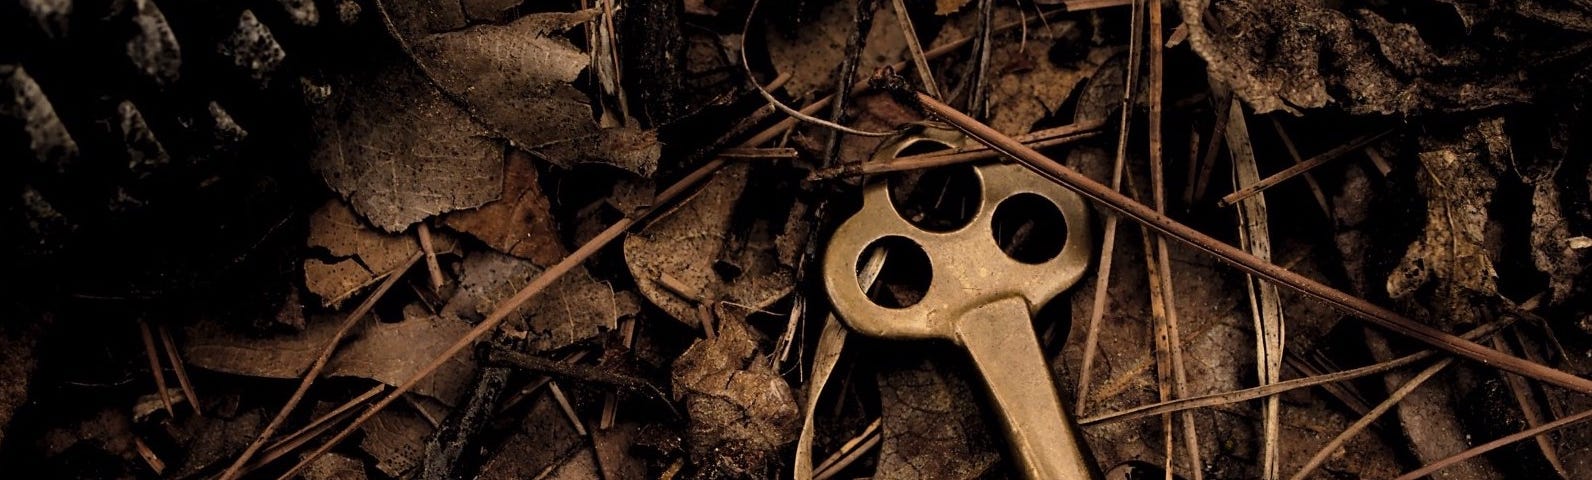 Old key on dead leaves